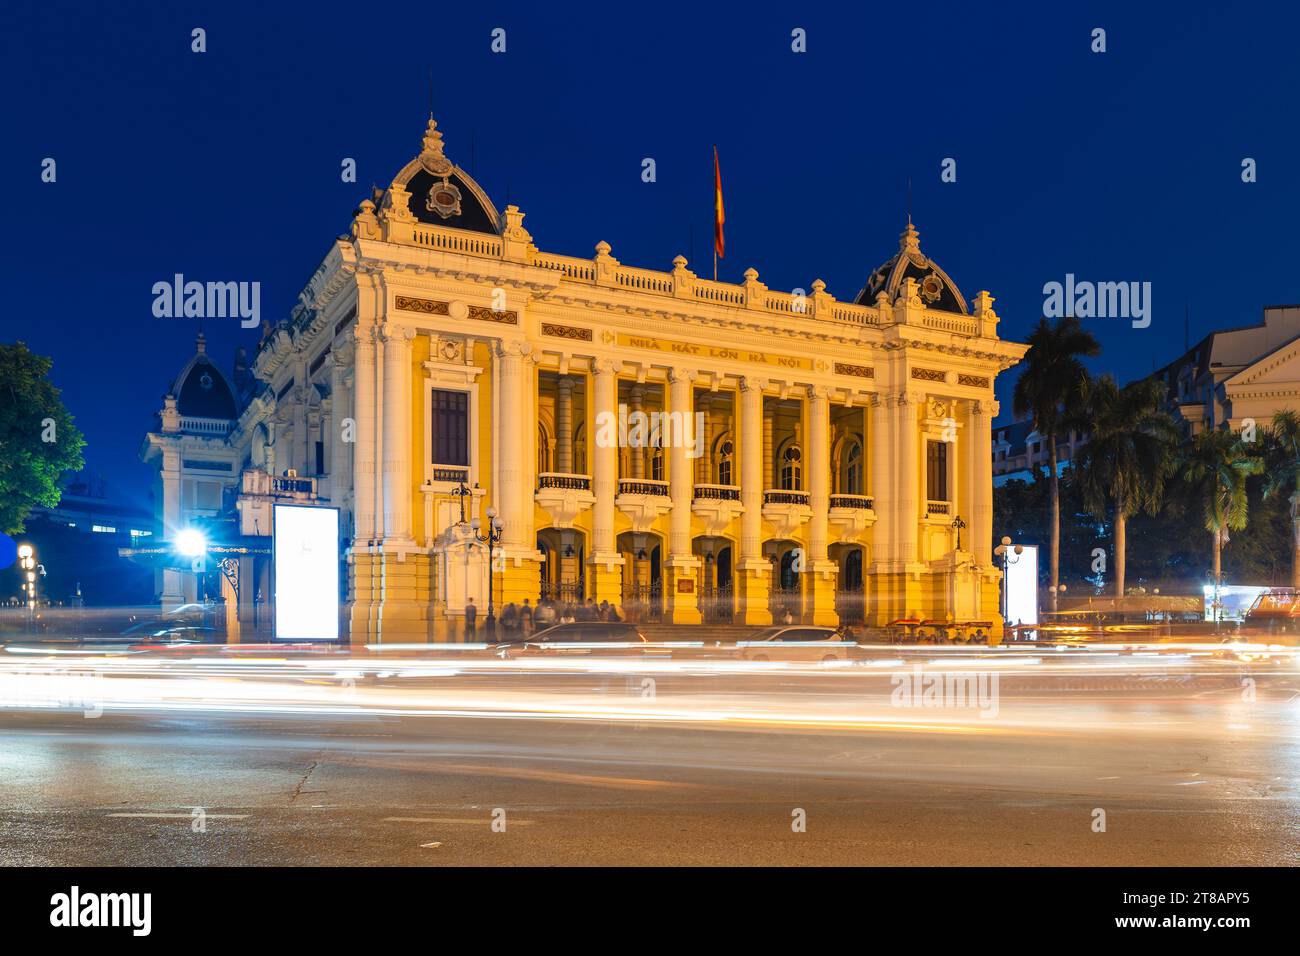 Hanoi Opera House, alias le Grand Opera House, situé à Hanoi, Vietnam. Traduction : Opéra de Hanoi Banque D'Images